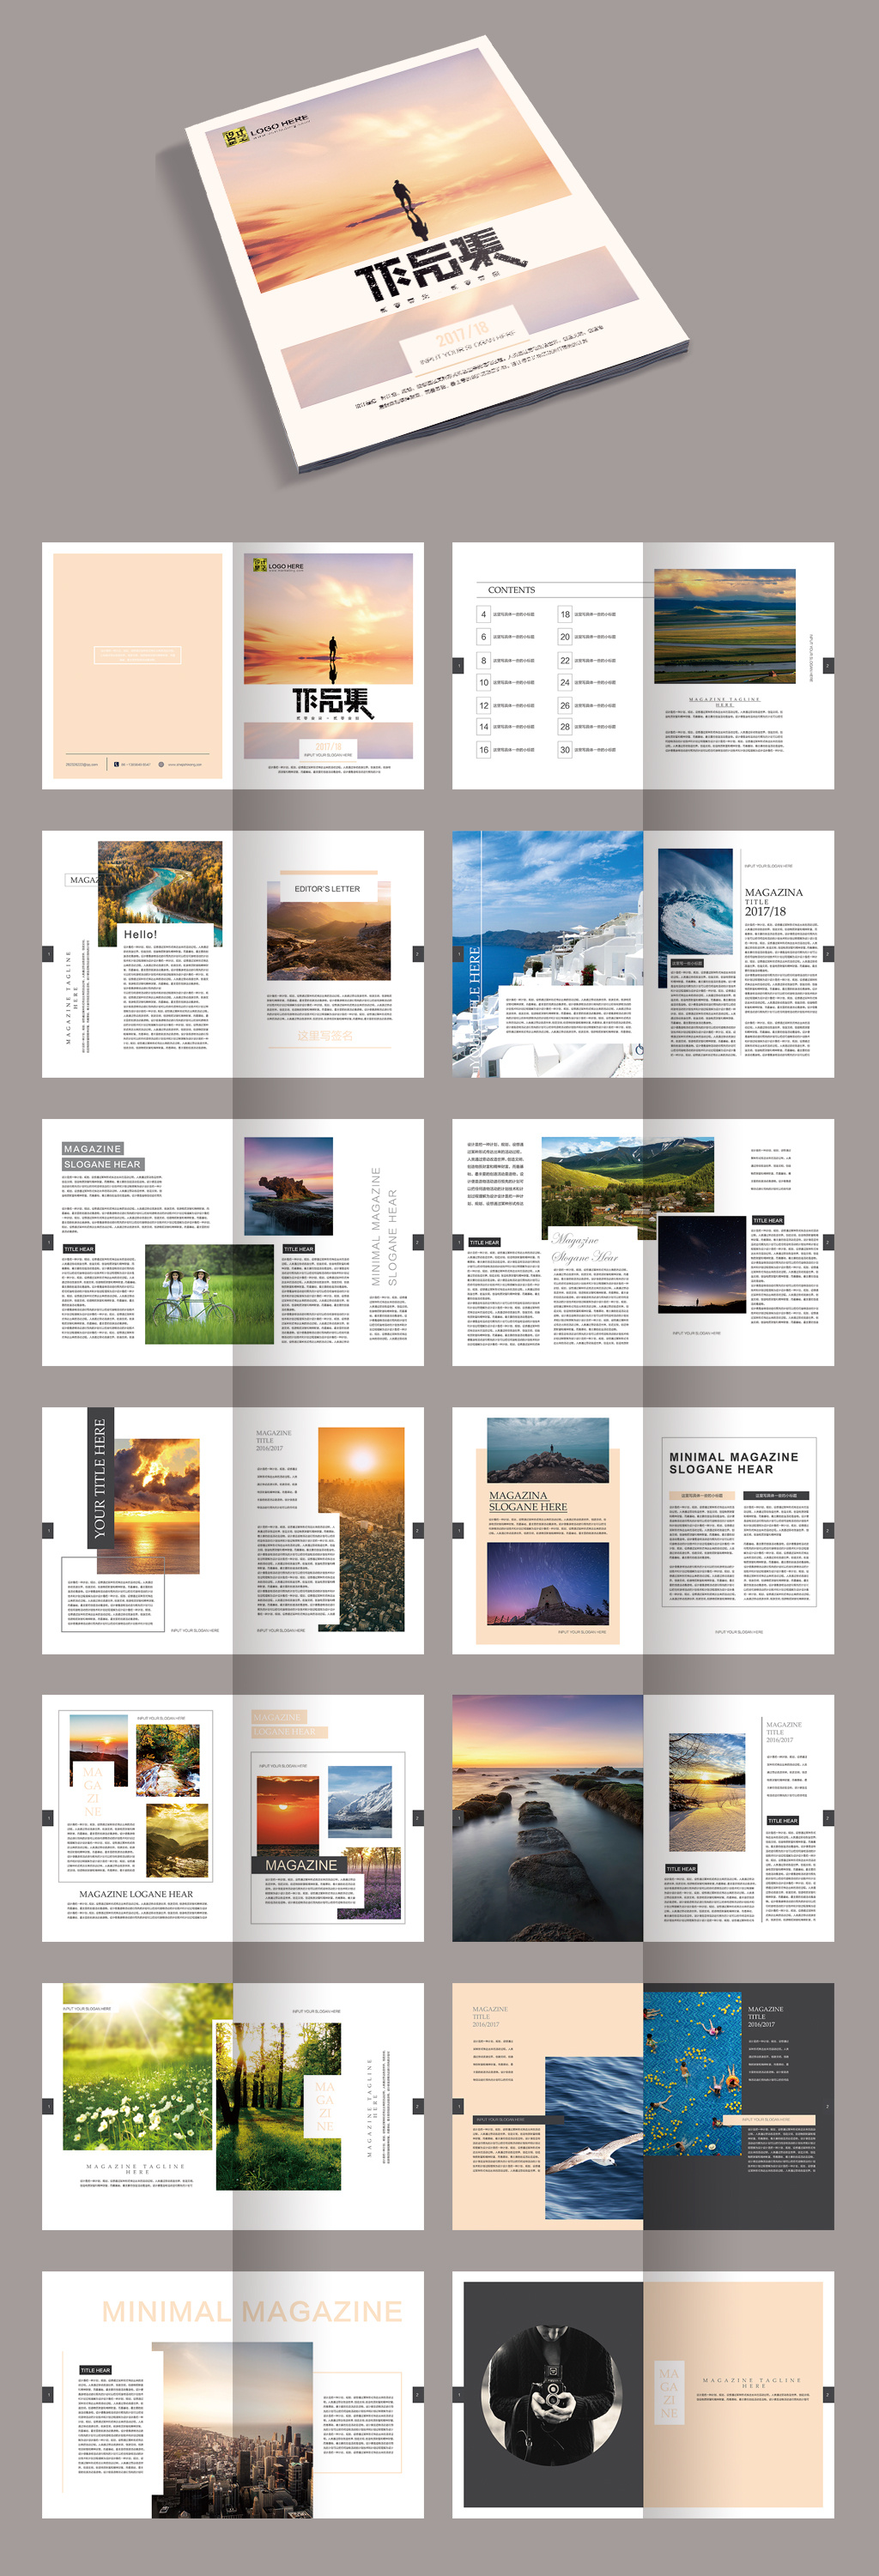 77套企业宣传册产品画册杂志排版作品集psd设计模板素材源文件